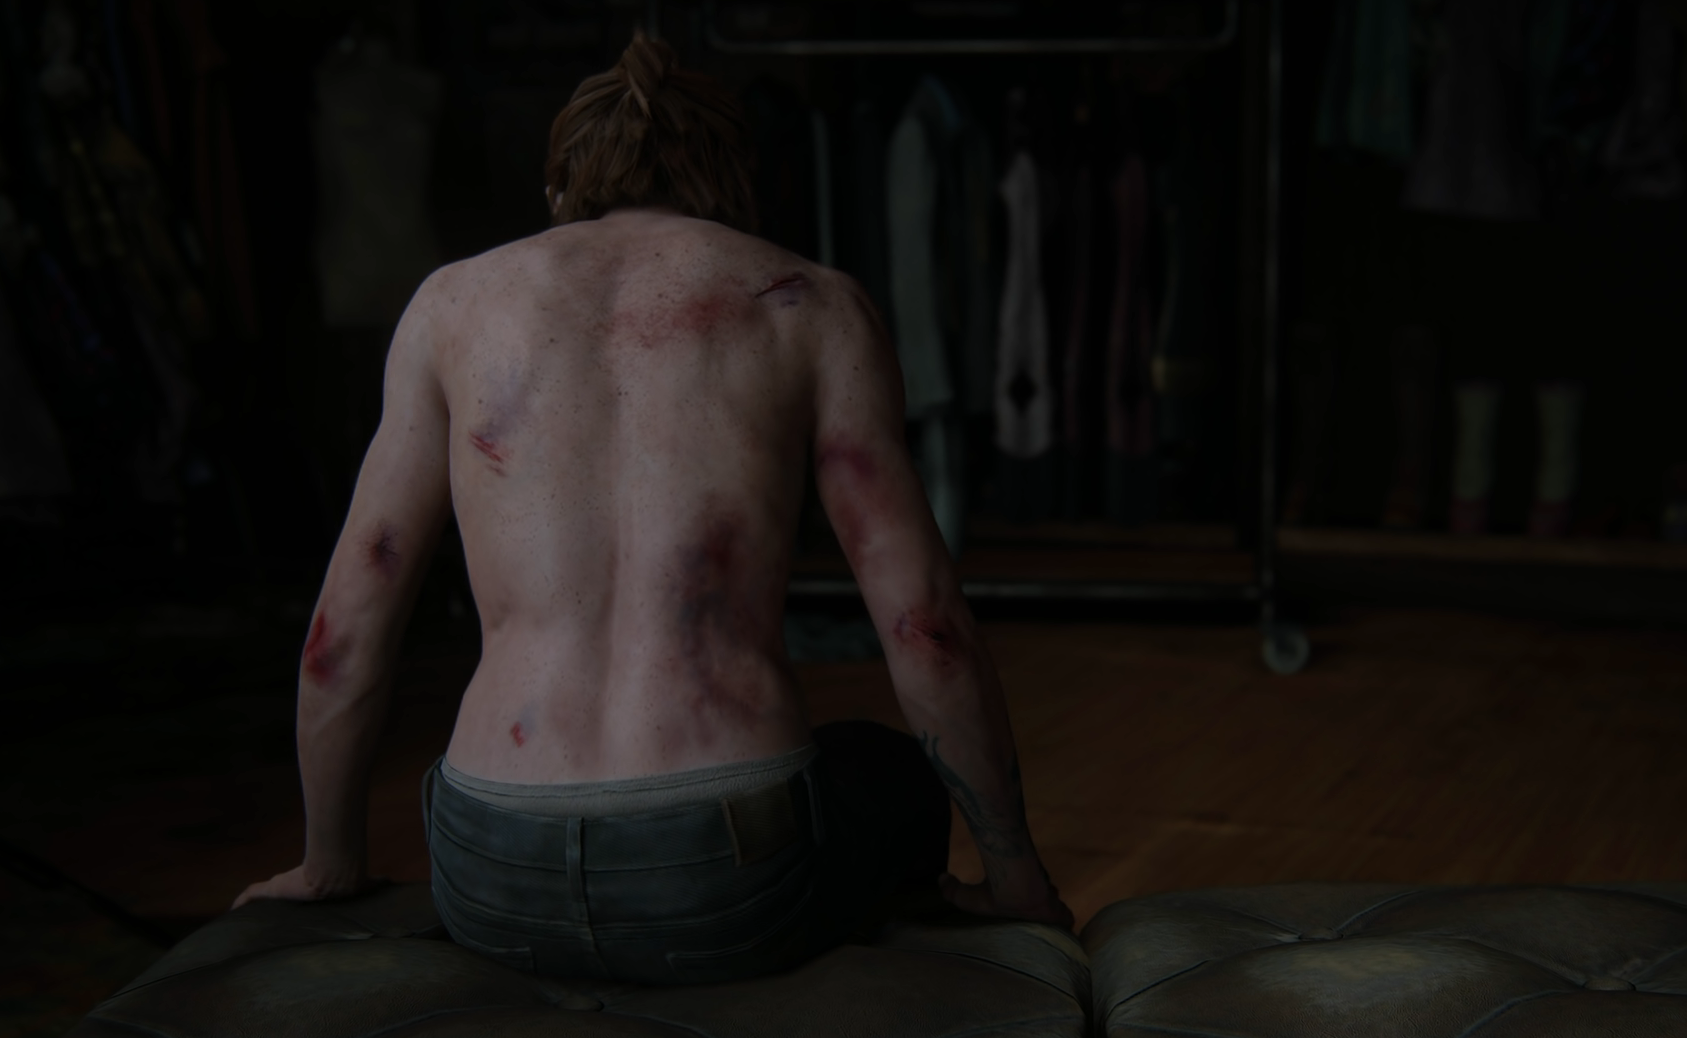 Naughty Dog urosła: The Last of Us Part 2 będzie pierwszą grą studios z nagością i seksem